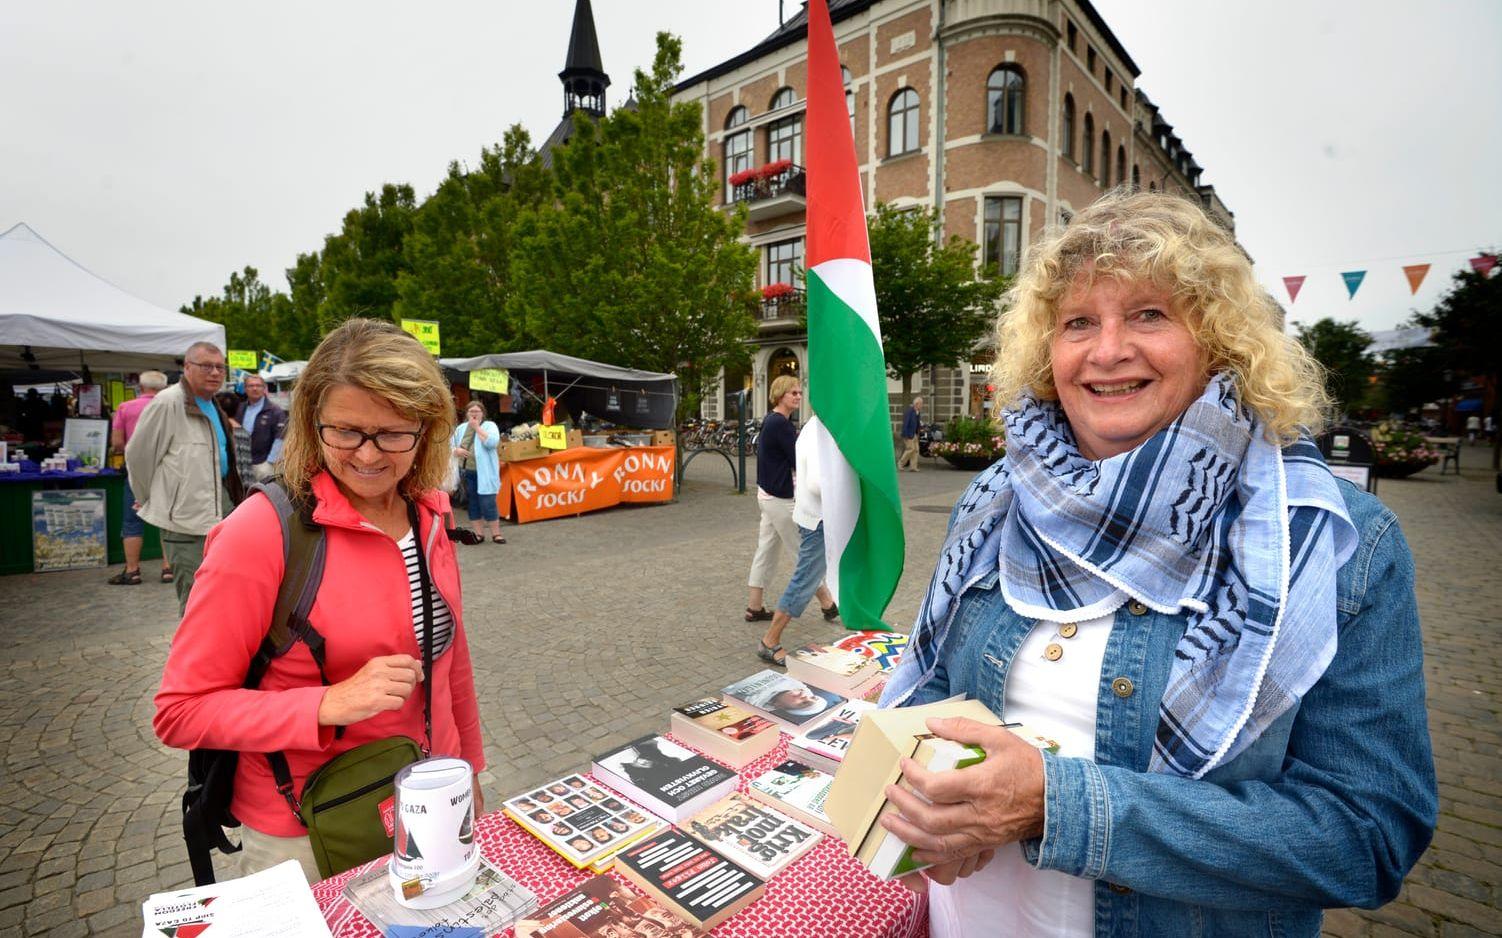 Engagerad. Ulla Olsson står på torget för organisationen Ship to Gazas räkning. Här tillsammans med Marianne Dovemark som tittar på ståndets utbud. Bild: Annika Karlbom